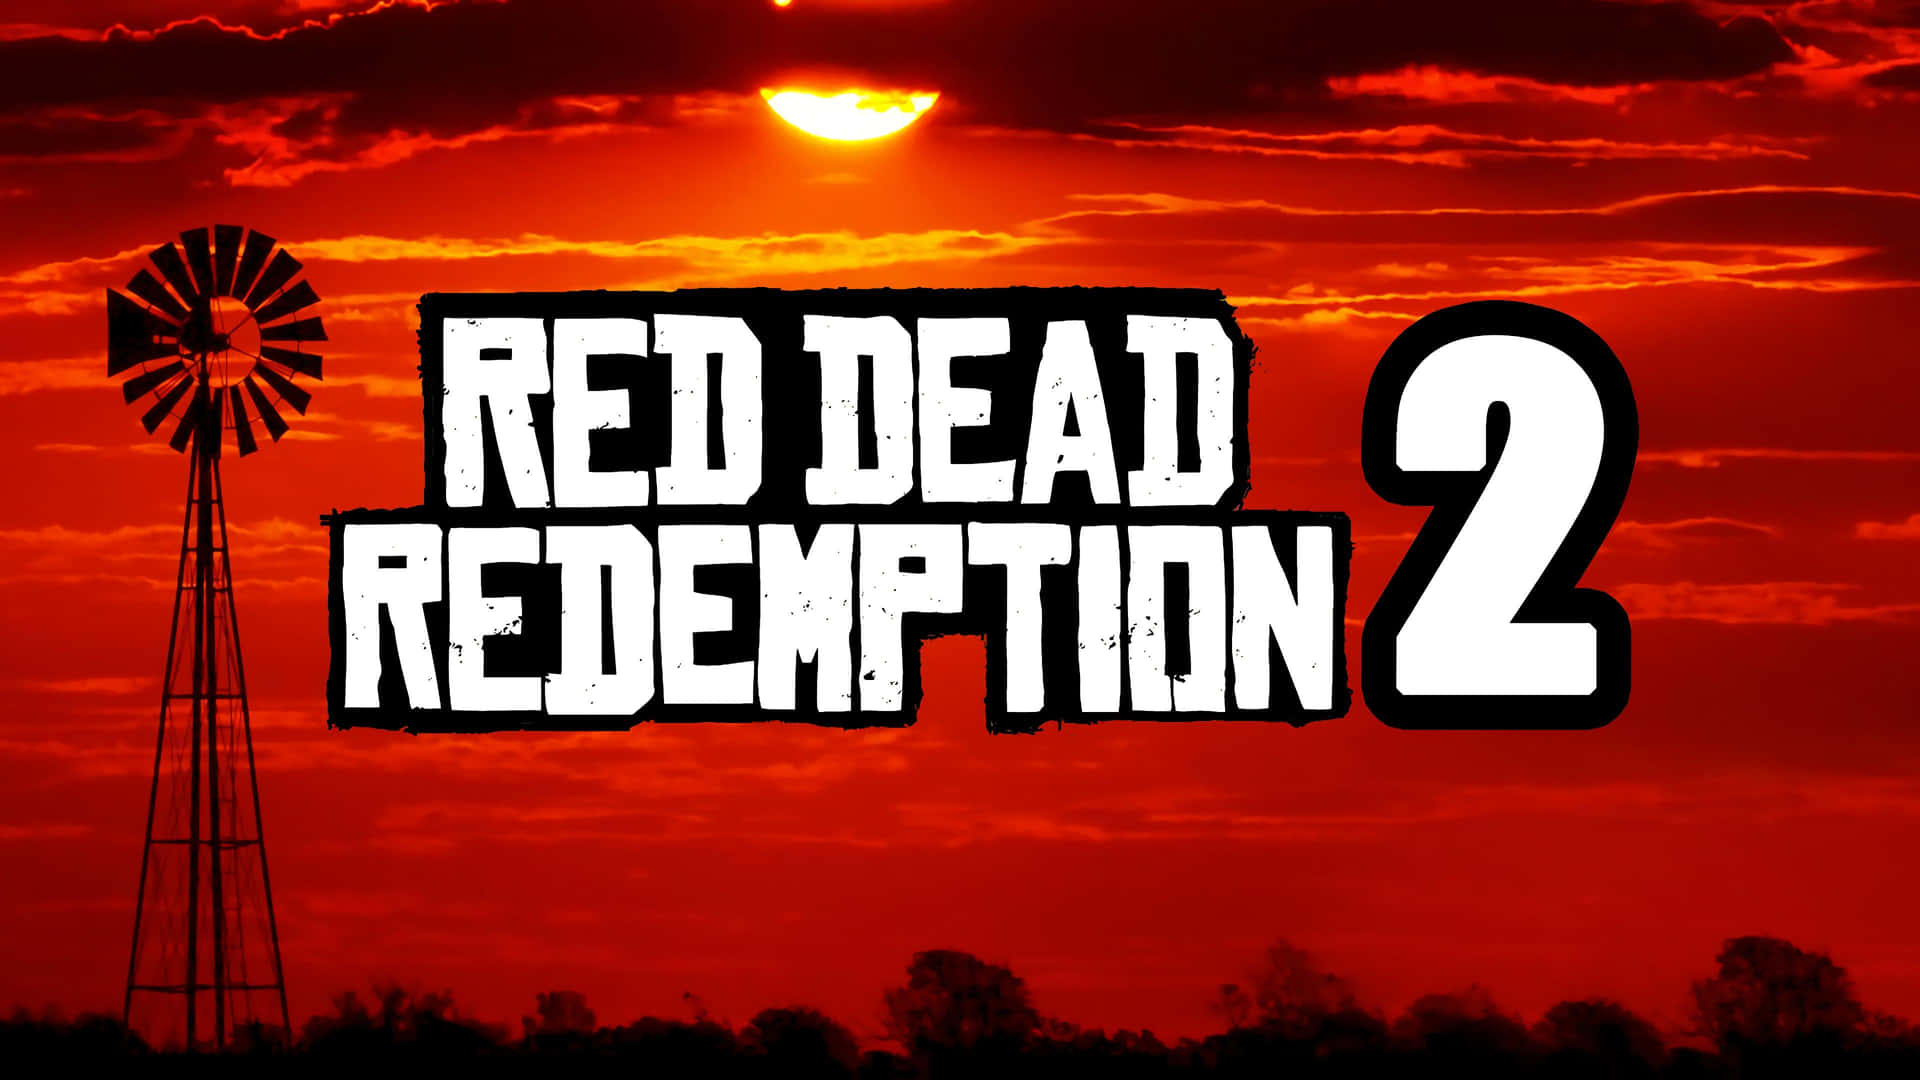 Cabalgahacia El Atardecer Con Red Dead Redemption 2 En Full Hd Fondo de pantalla